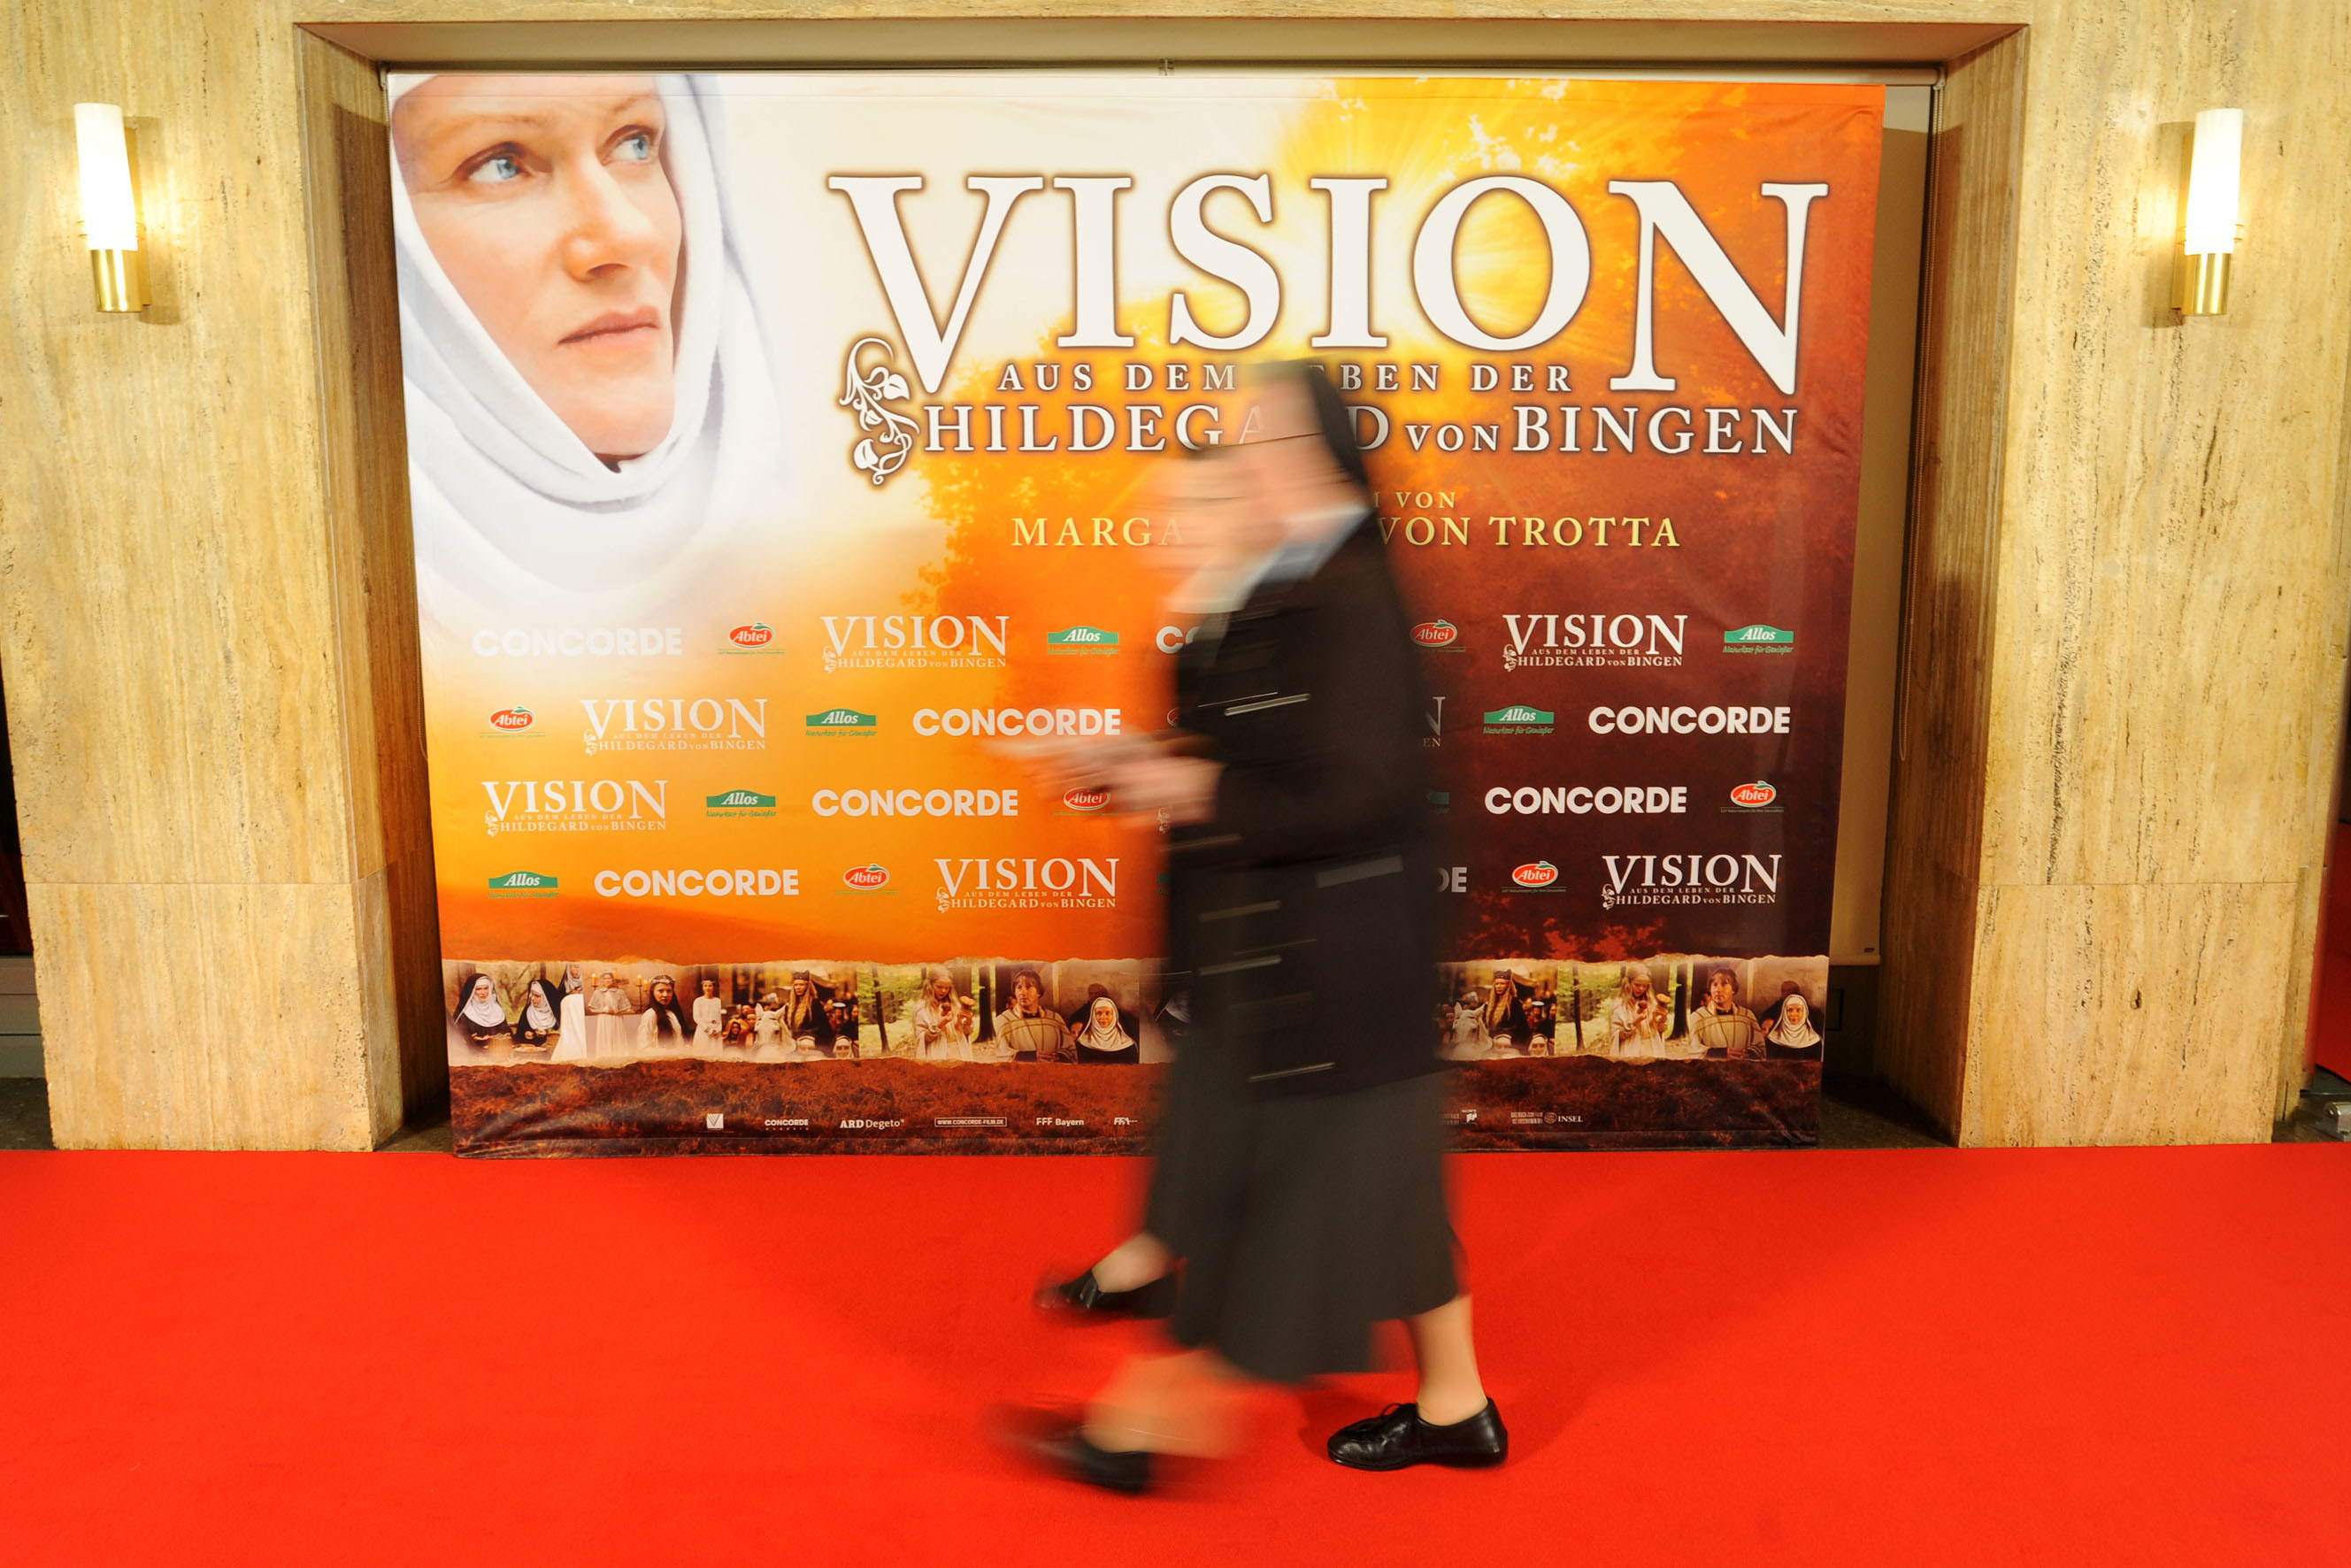 Eine Nonne läuft an einem Schaukasten mit dem Plakat zum Film vorbei